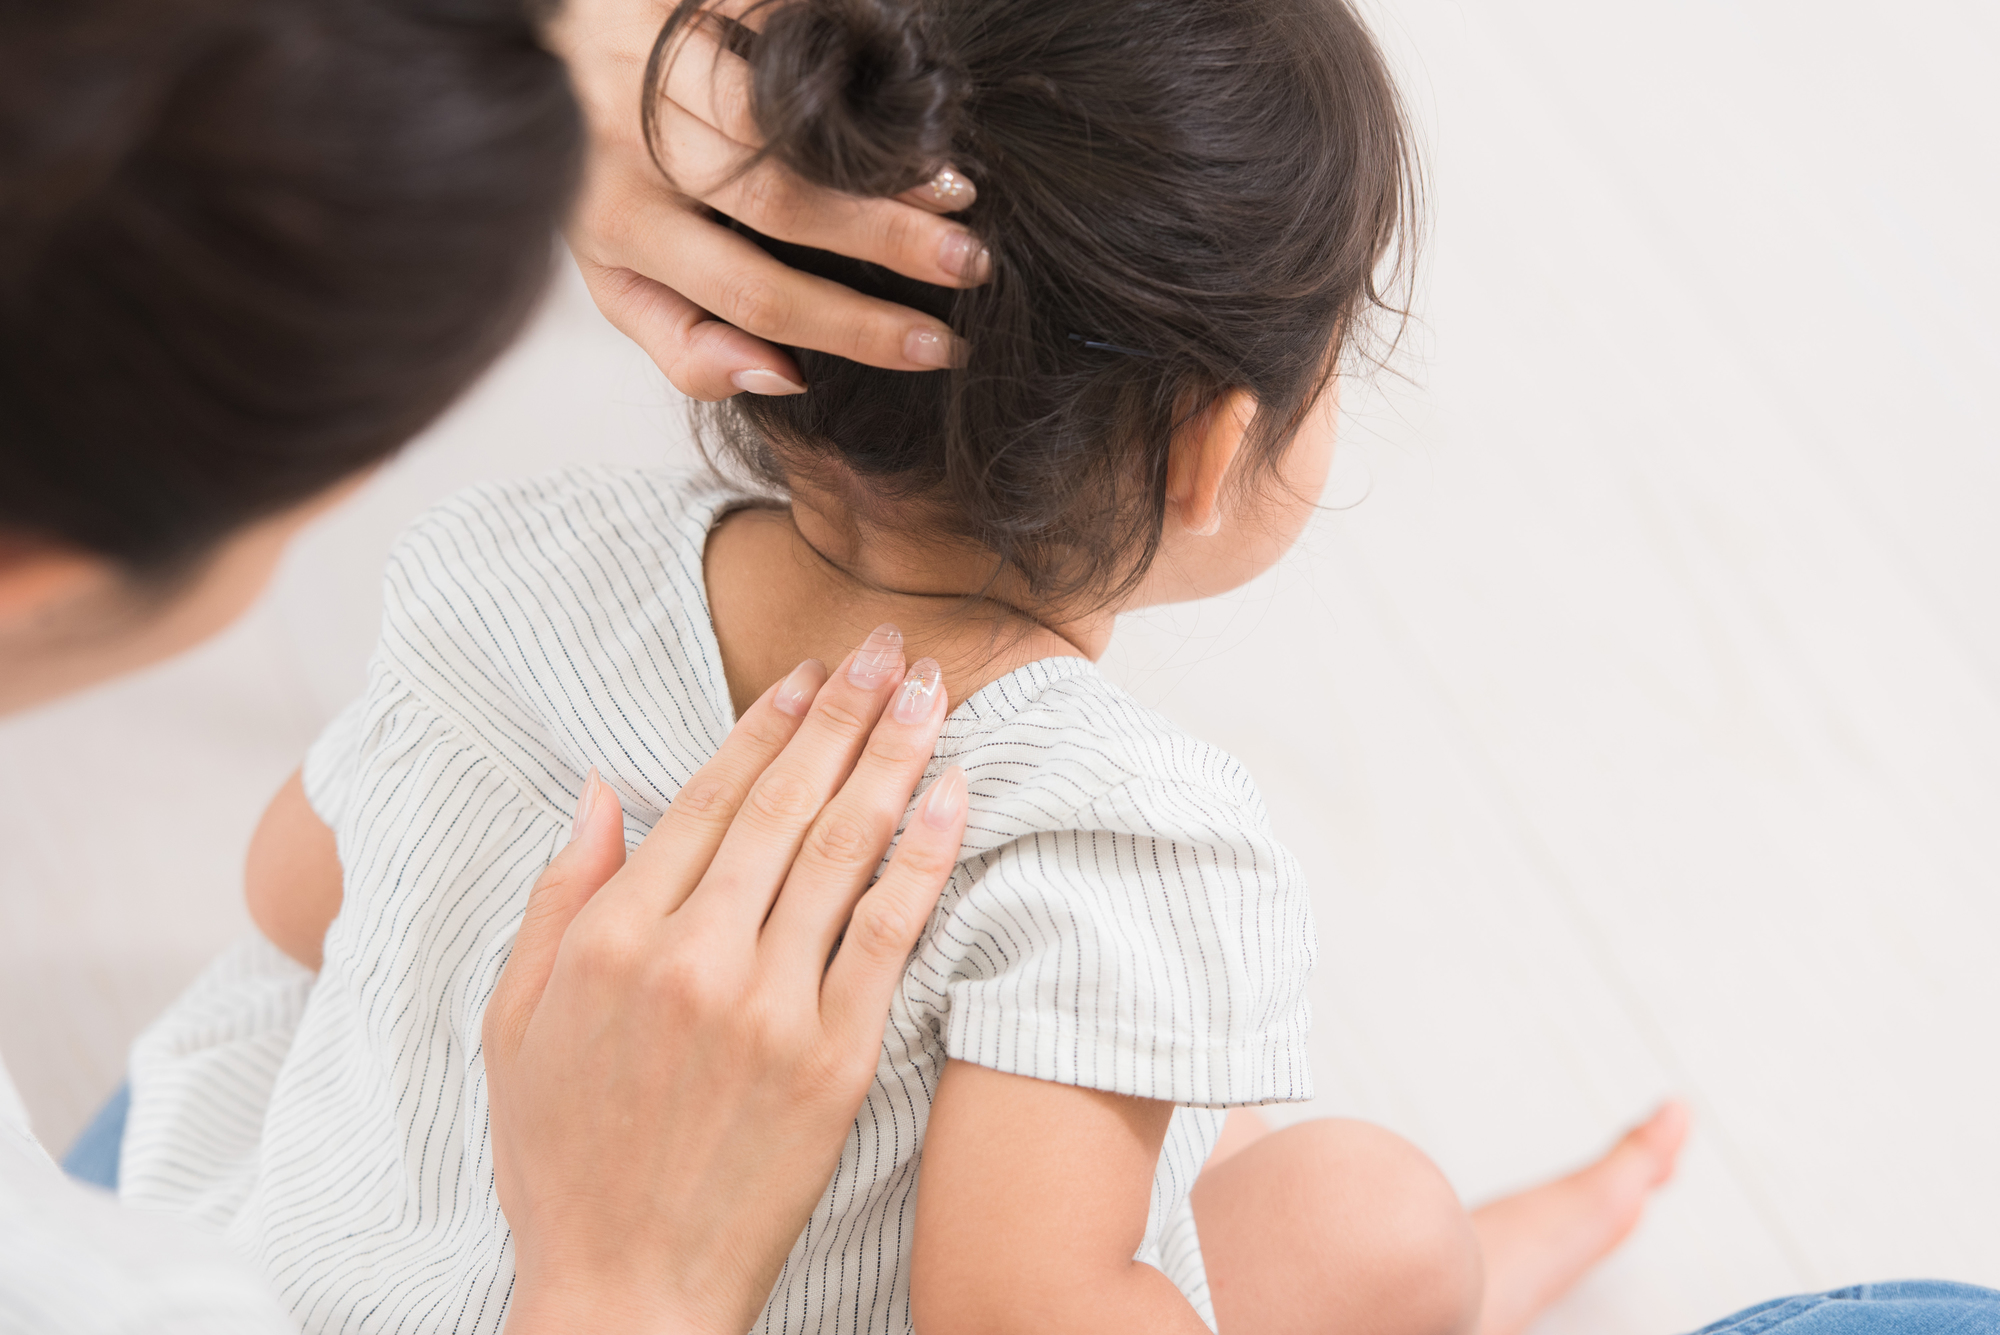 の 子供 が 痛い 後ろ 首 3歳の子供が首の後ろを痛がります。